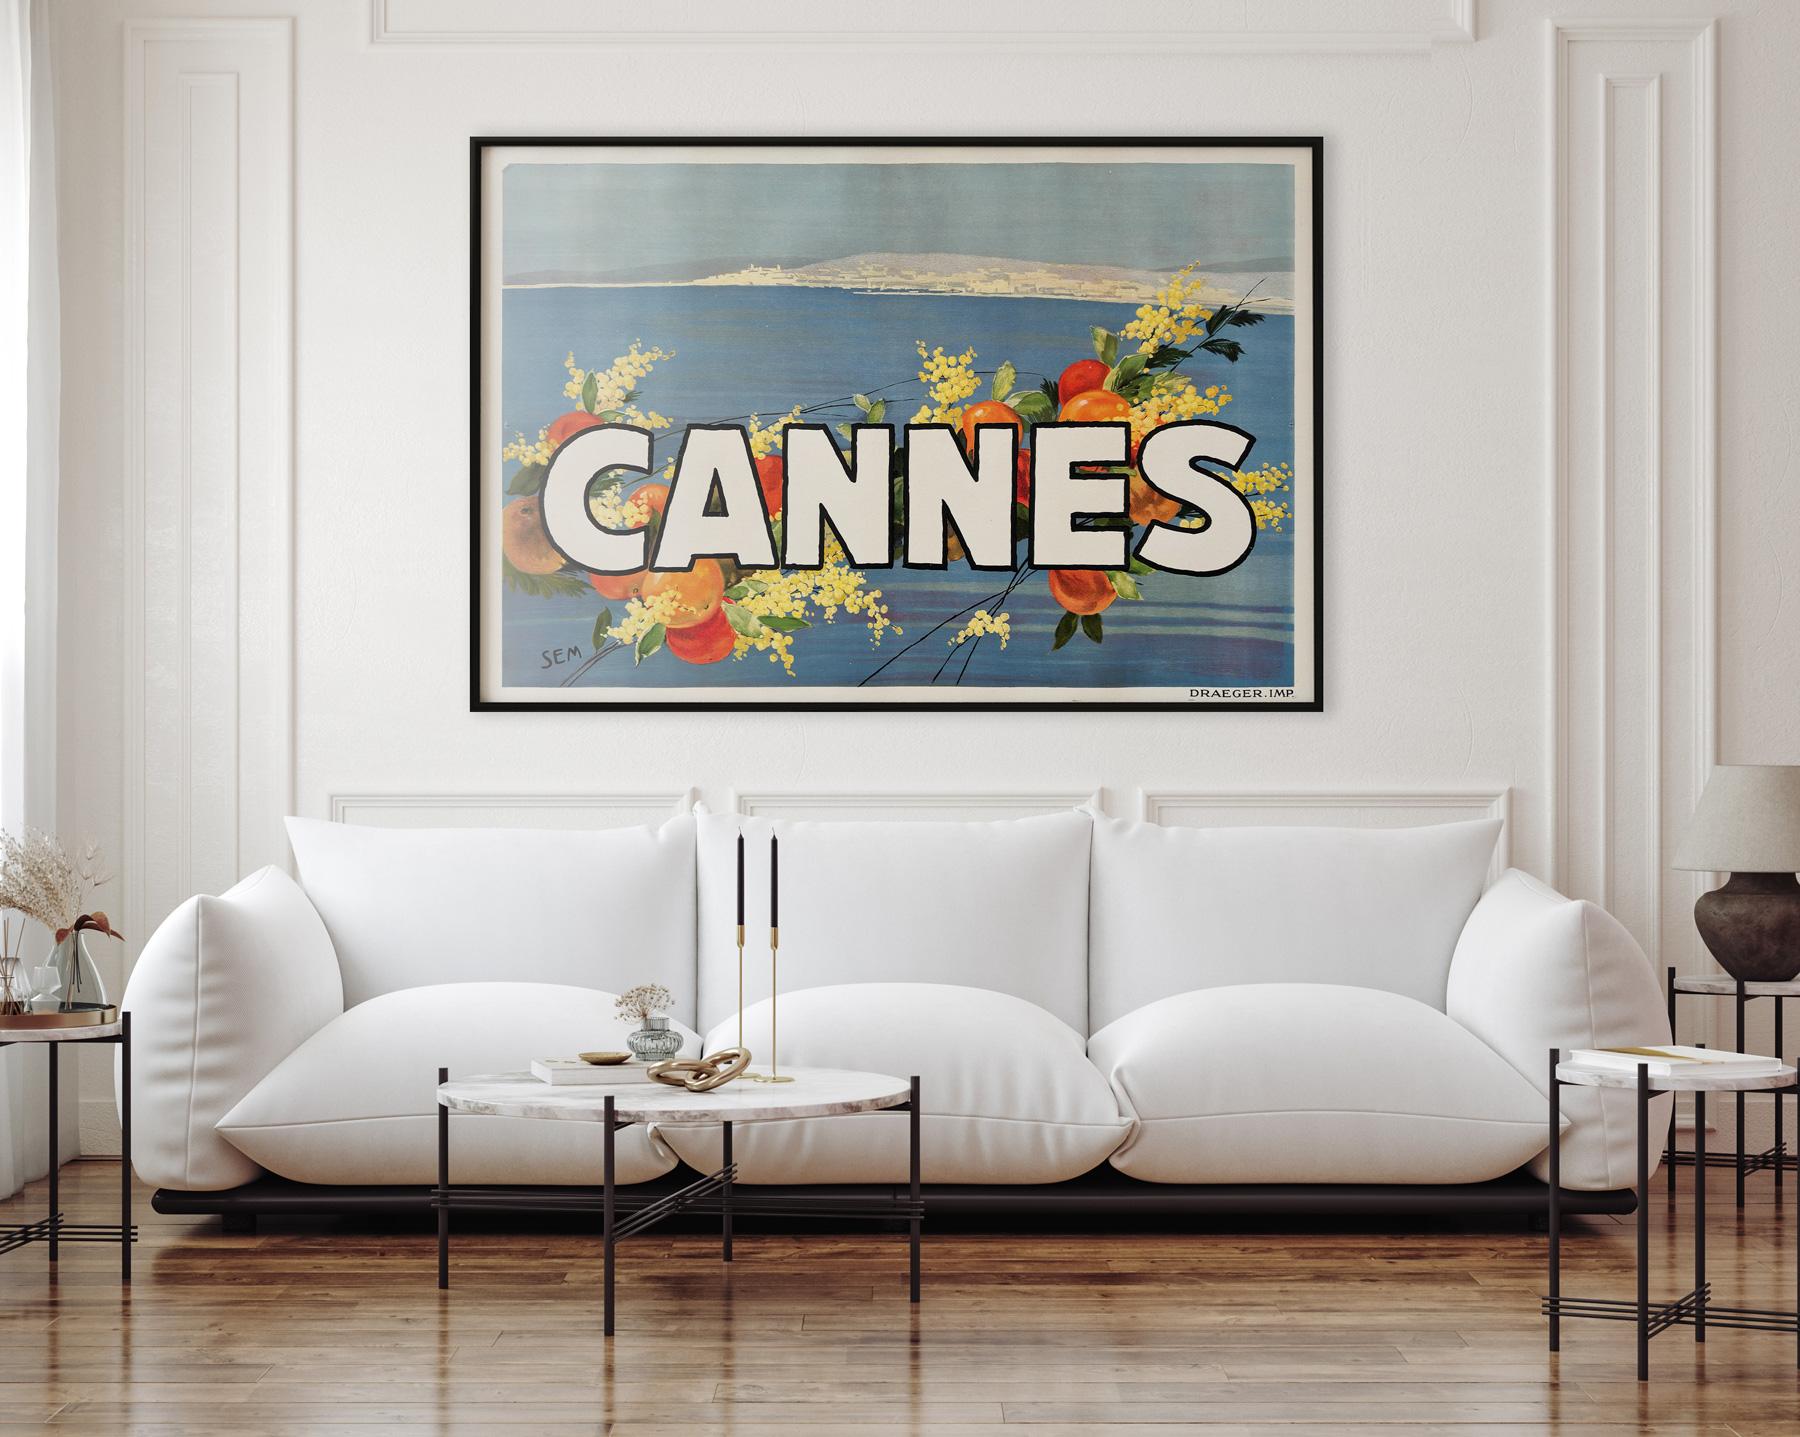 Magnifique affiche publicitaire originale des années 1930 pour Cannes, conçue par George Goursat (SEM). 

Dans un état fantastique, proche de Mint/Mint, avec un dos en lin.

Cette affiche de film vintage originale a été professionnellement doublée